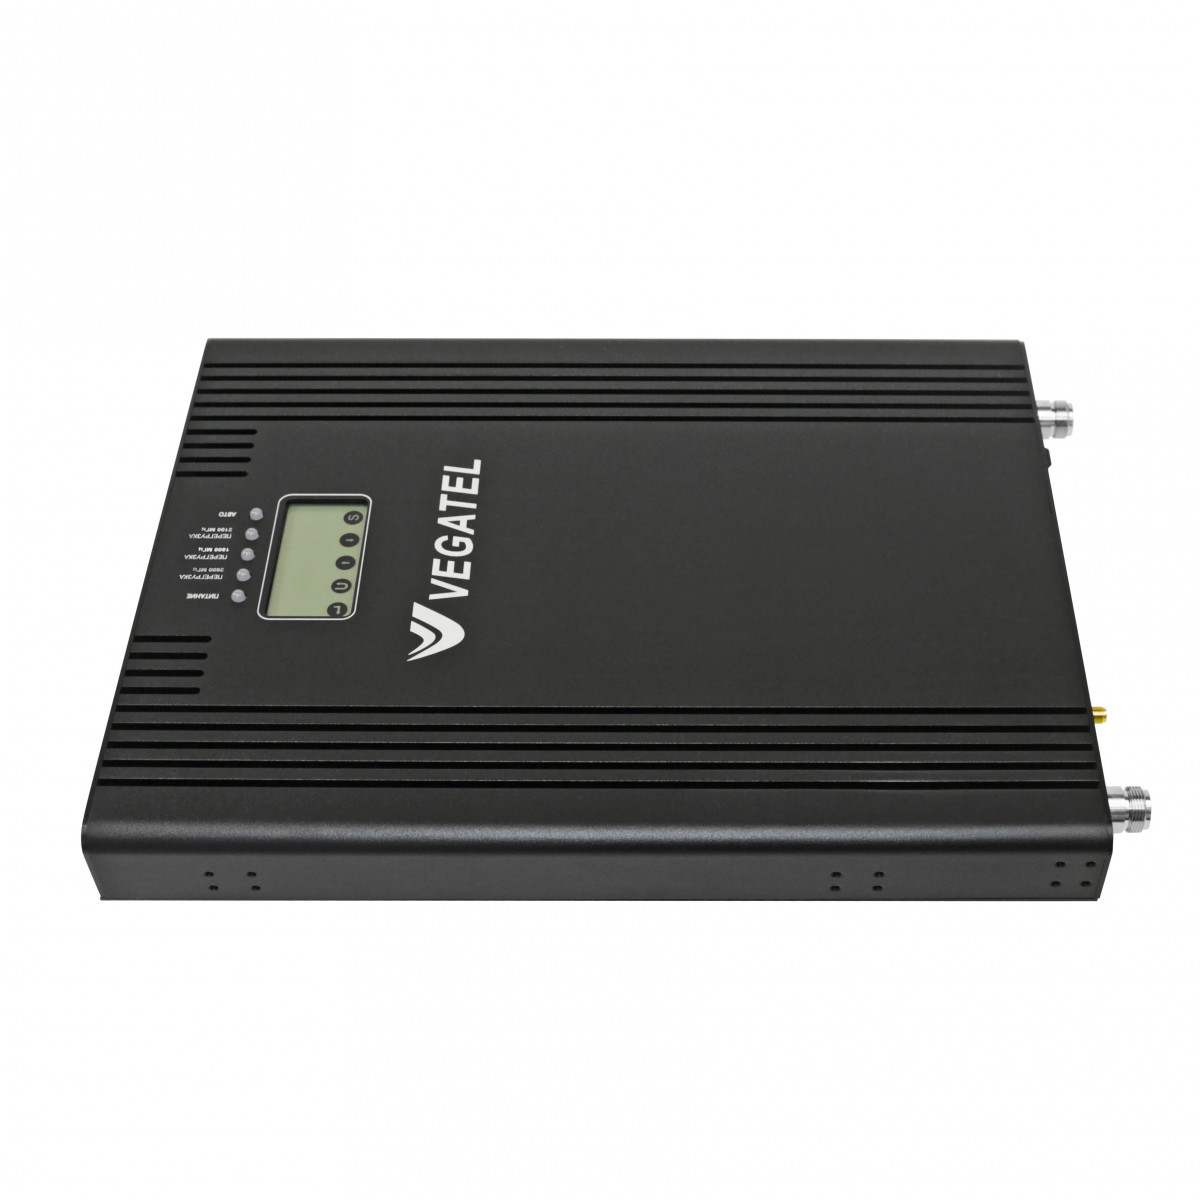 Детальное изображение товара "Репитер Vegatel VT3-1800/2100/2600" из каталога оборудования Антенна76